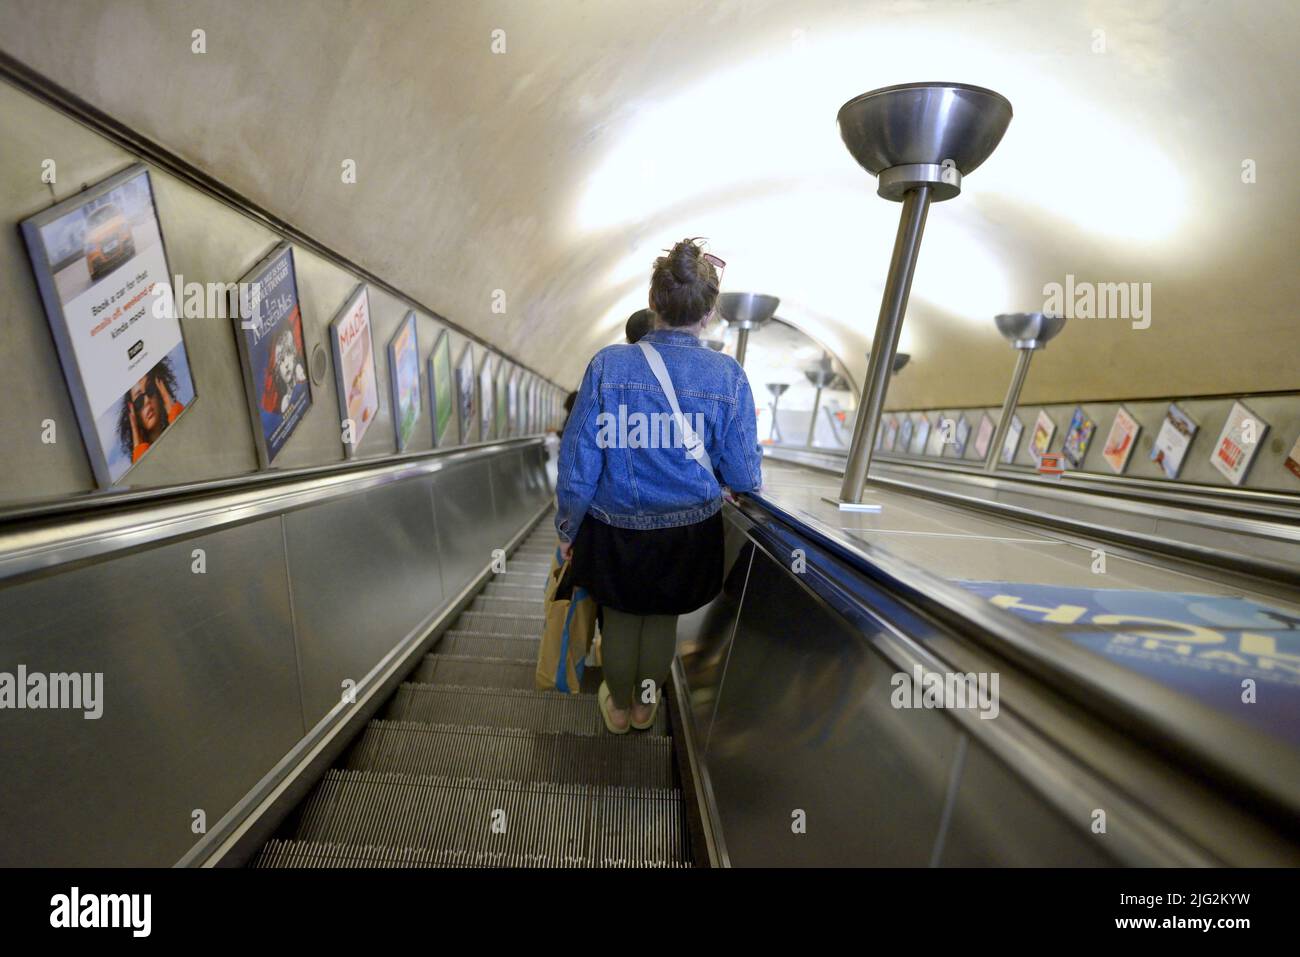 Londres, Inglaterra, Reino Unido. Mujer en una estación de metro de Londres por una escalera mecánica Foto de stock